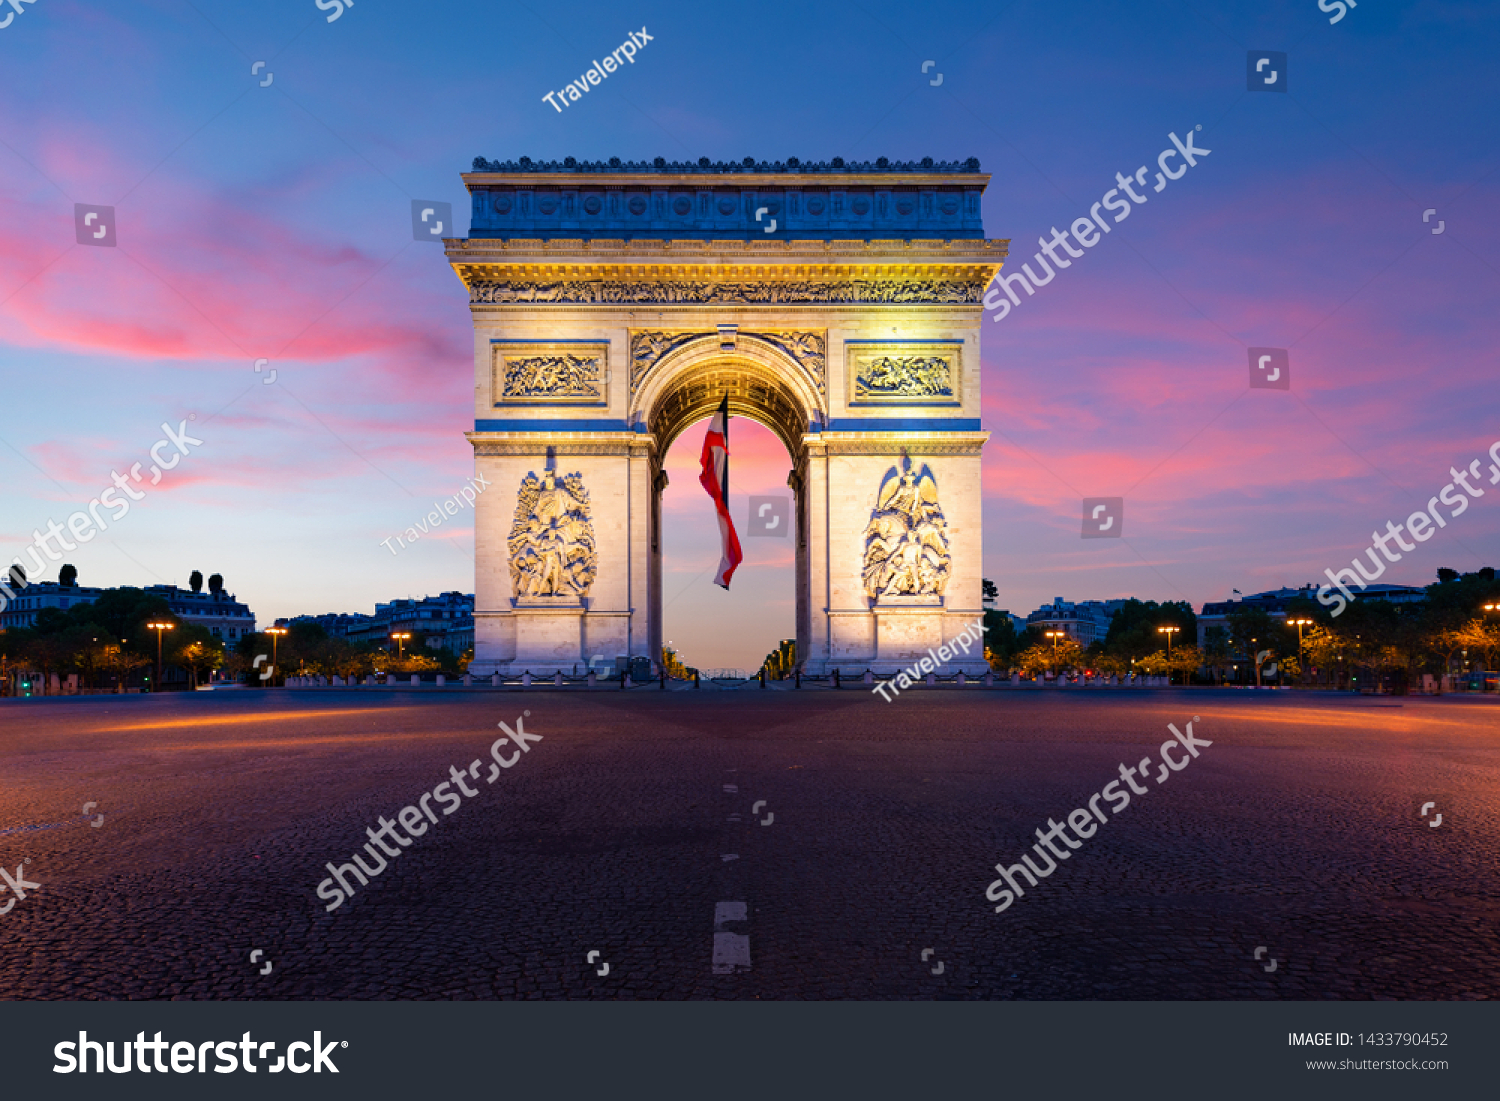 Arc de Triomphe NEW Time Lapse European Travel Artwork POSTER Paris France 